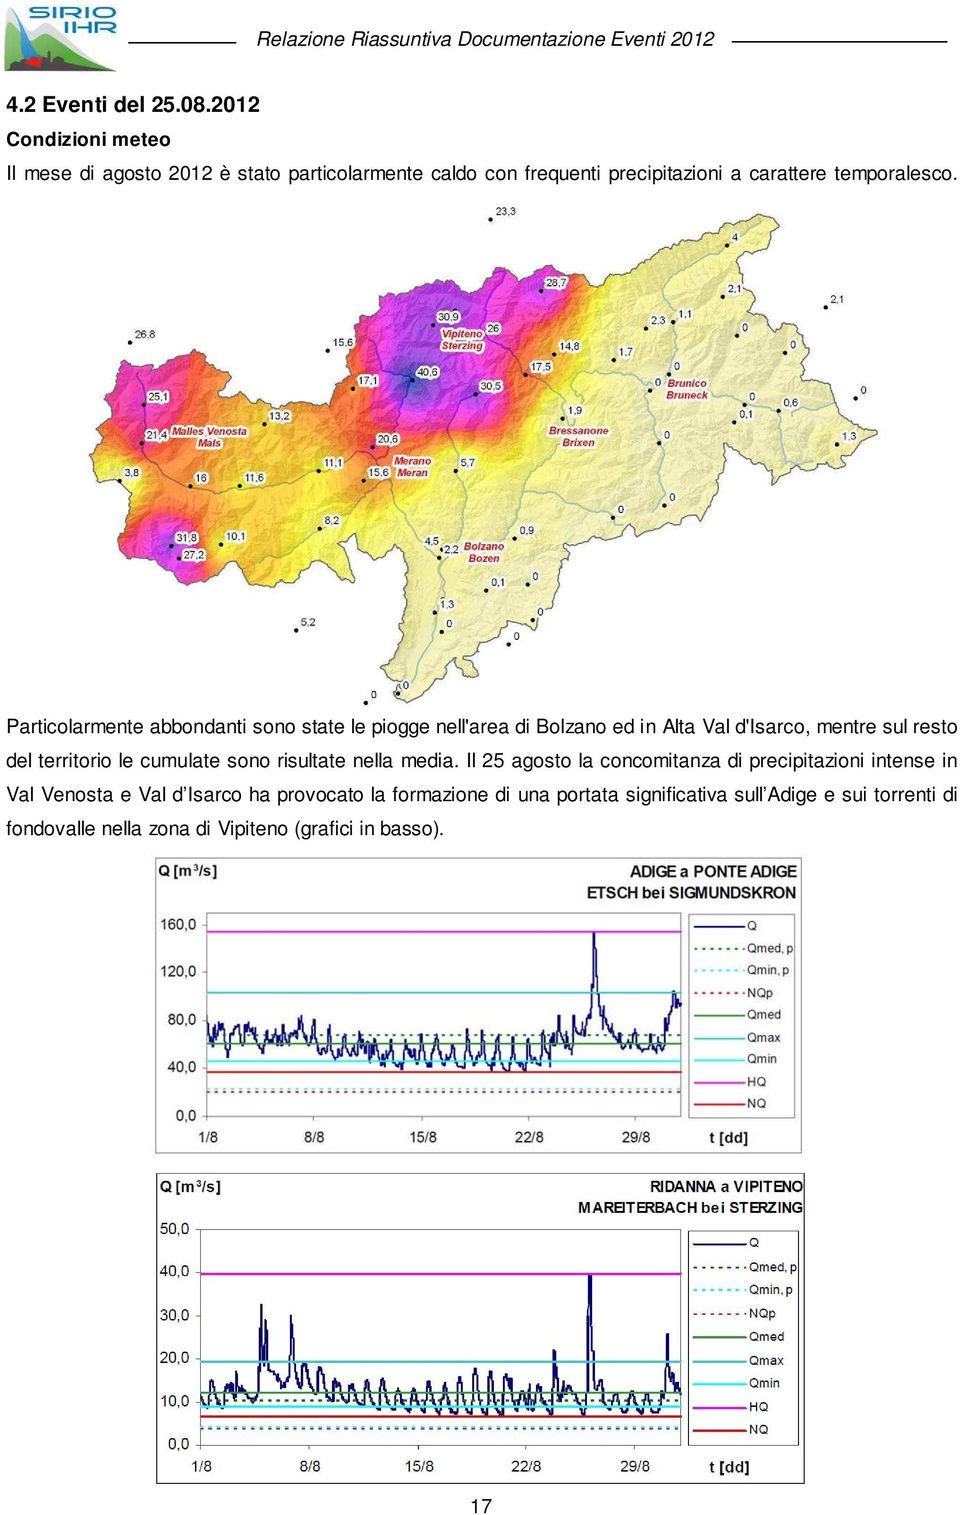 Particolarmente abbondanti sono state le piogge nell'area di Bolzano ed in Alta Val d'isarco, mentre sul resto del territorio le